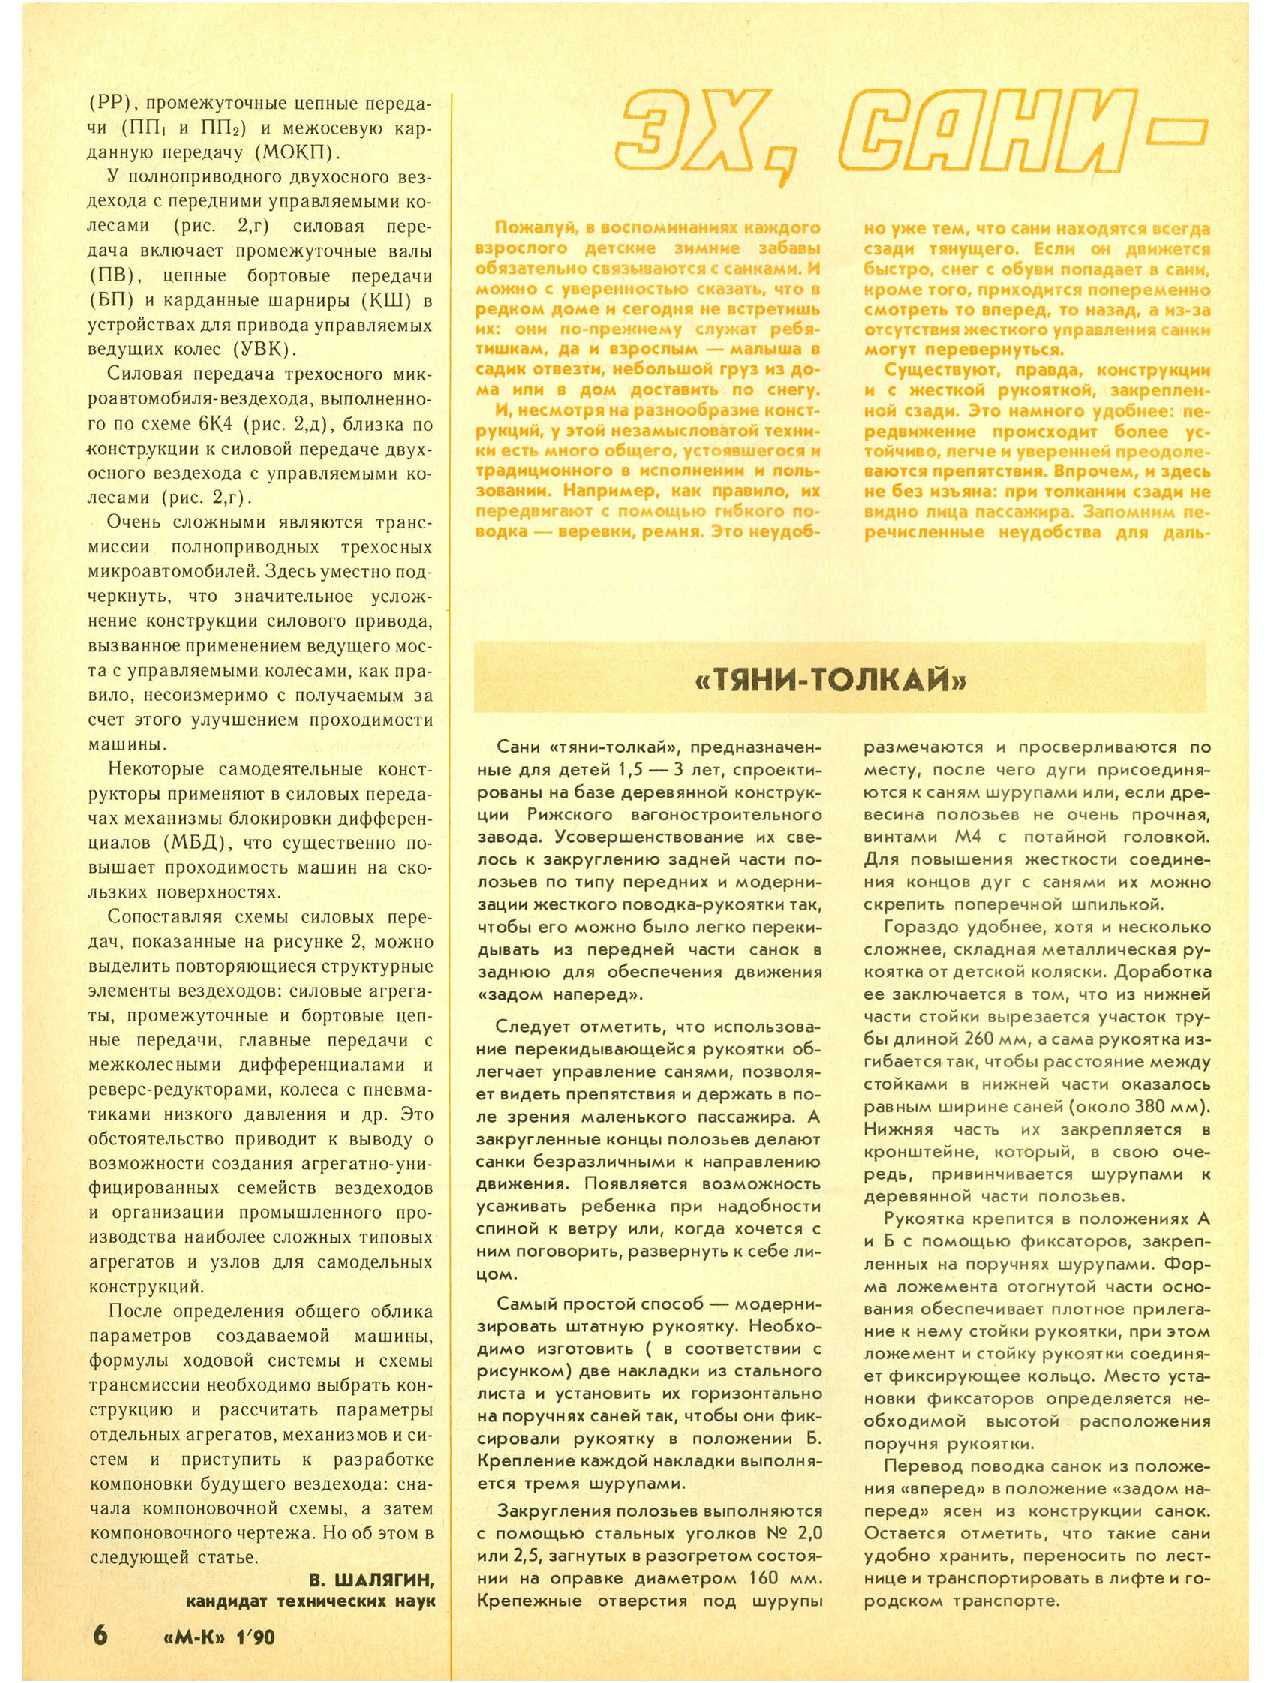 МК 1, 1990, 6 c.